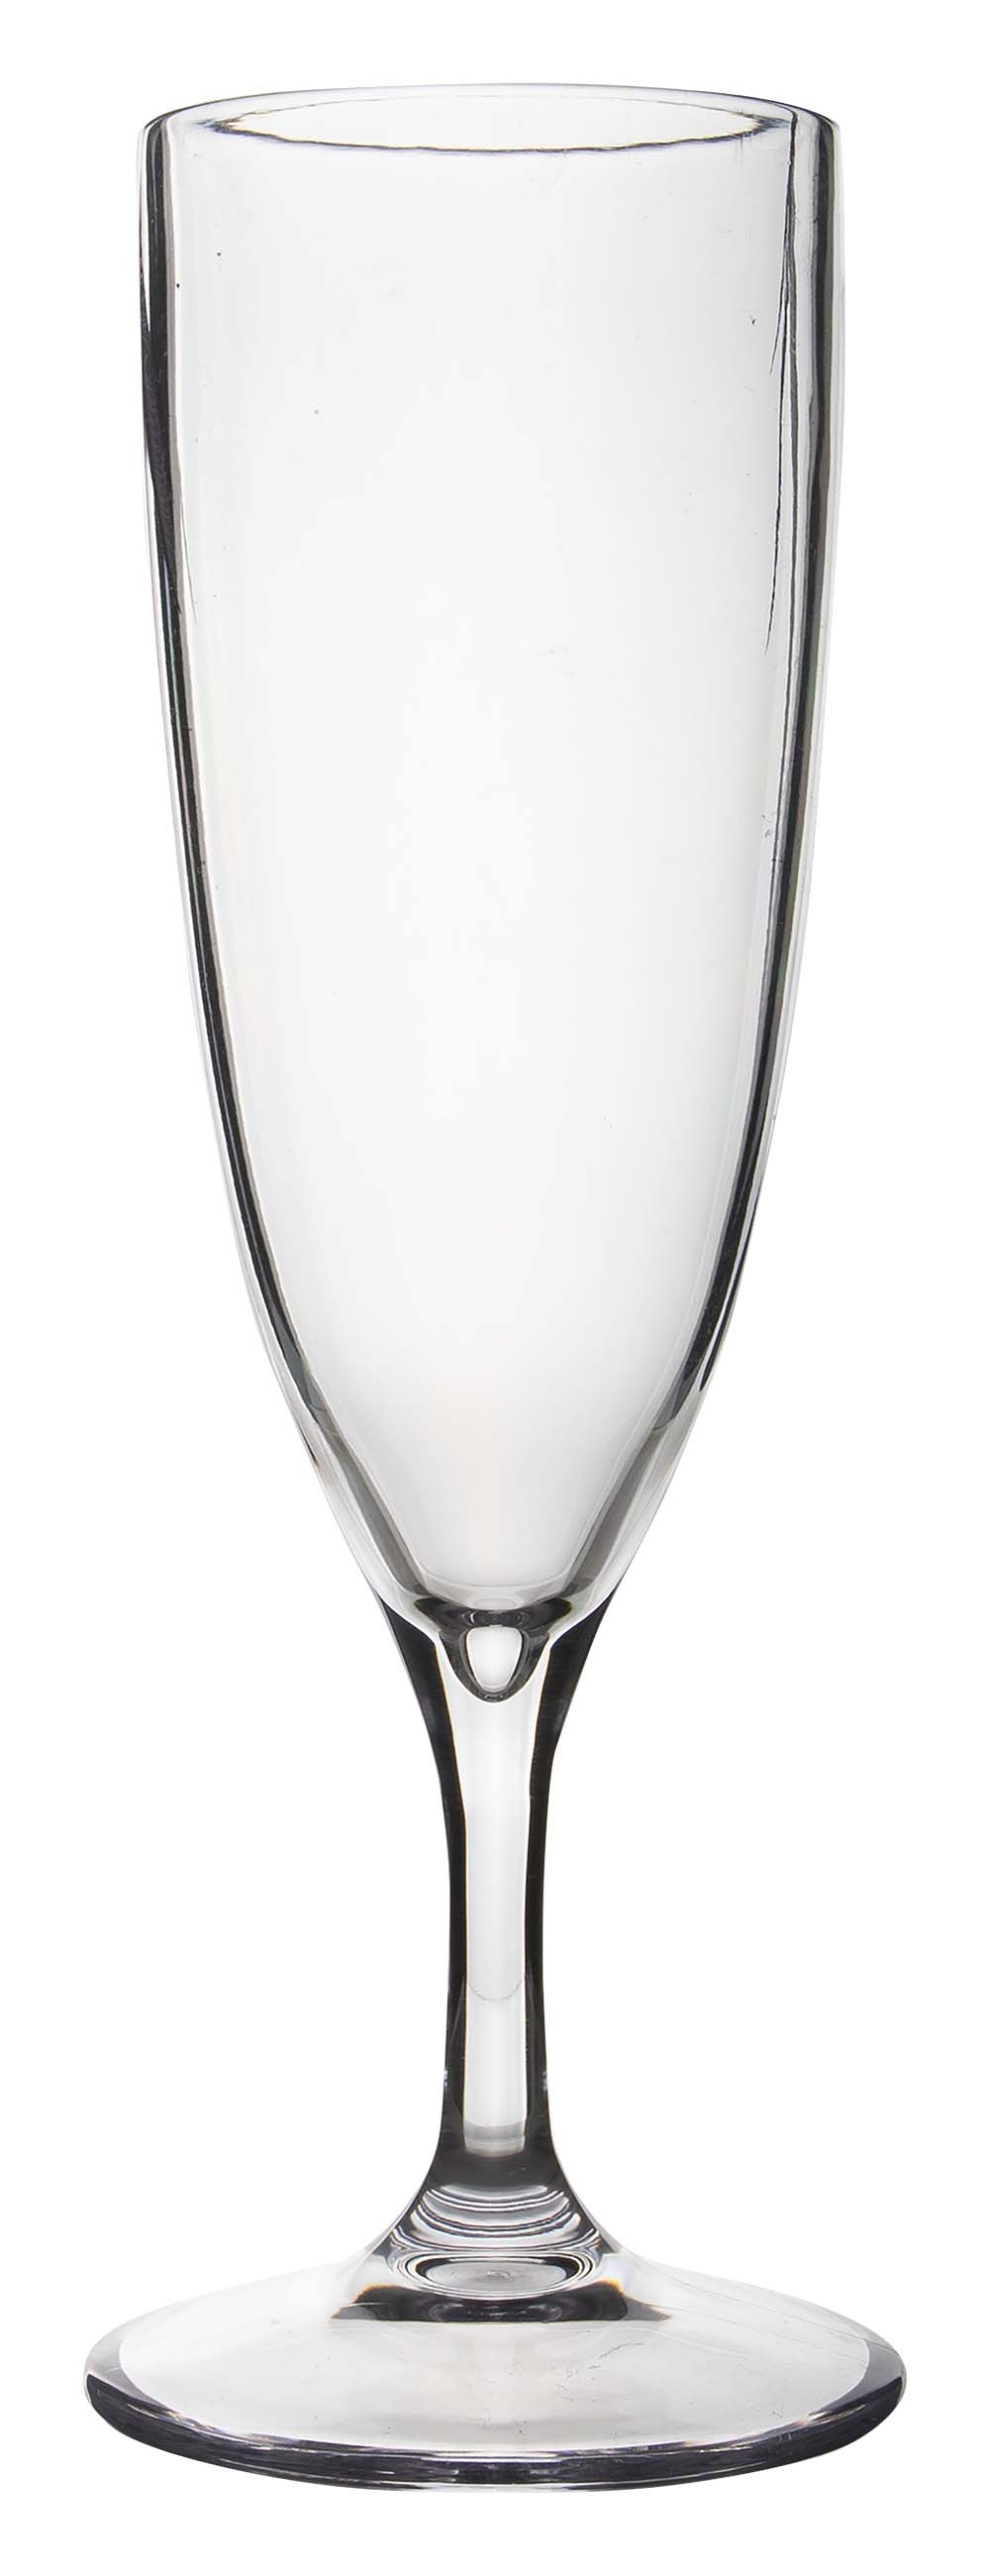 6969911 Een stijlvol champagneglas. Vrijwel onbreekbaar door hoogwaardig SAN materiaal. Zeer gemakkelijk te reinigen en langdurig te gebruiken, wat het glas erg duurzaam maakt. Daarnaast is het champagneglas lichtgewicht, krasbestendig en BPA vrij. Inhoud: 150 ml.